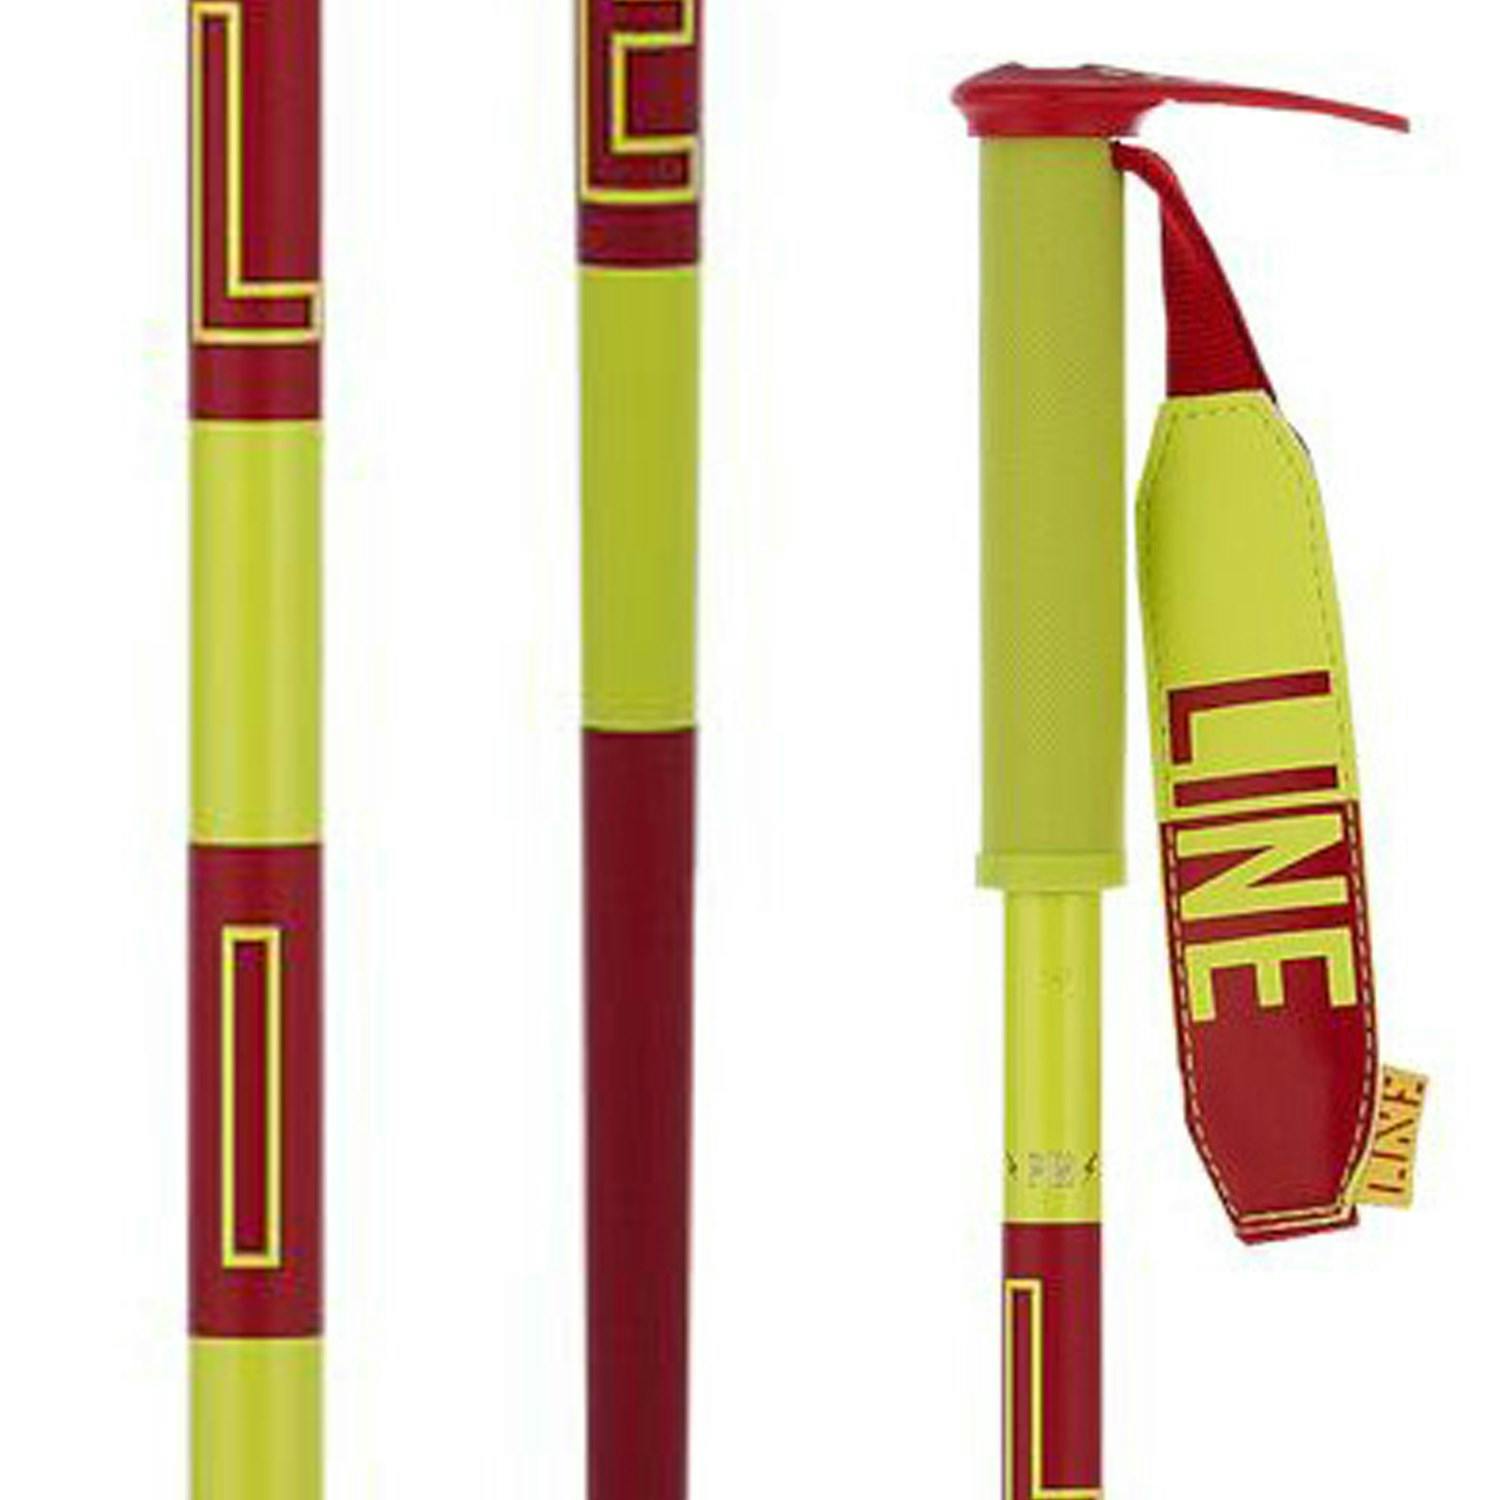 Line Pin Ski Poles